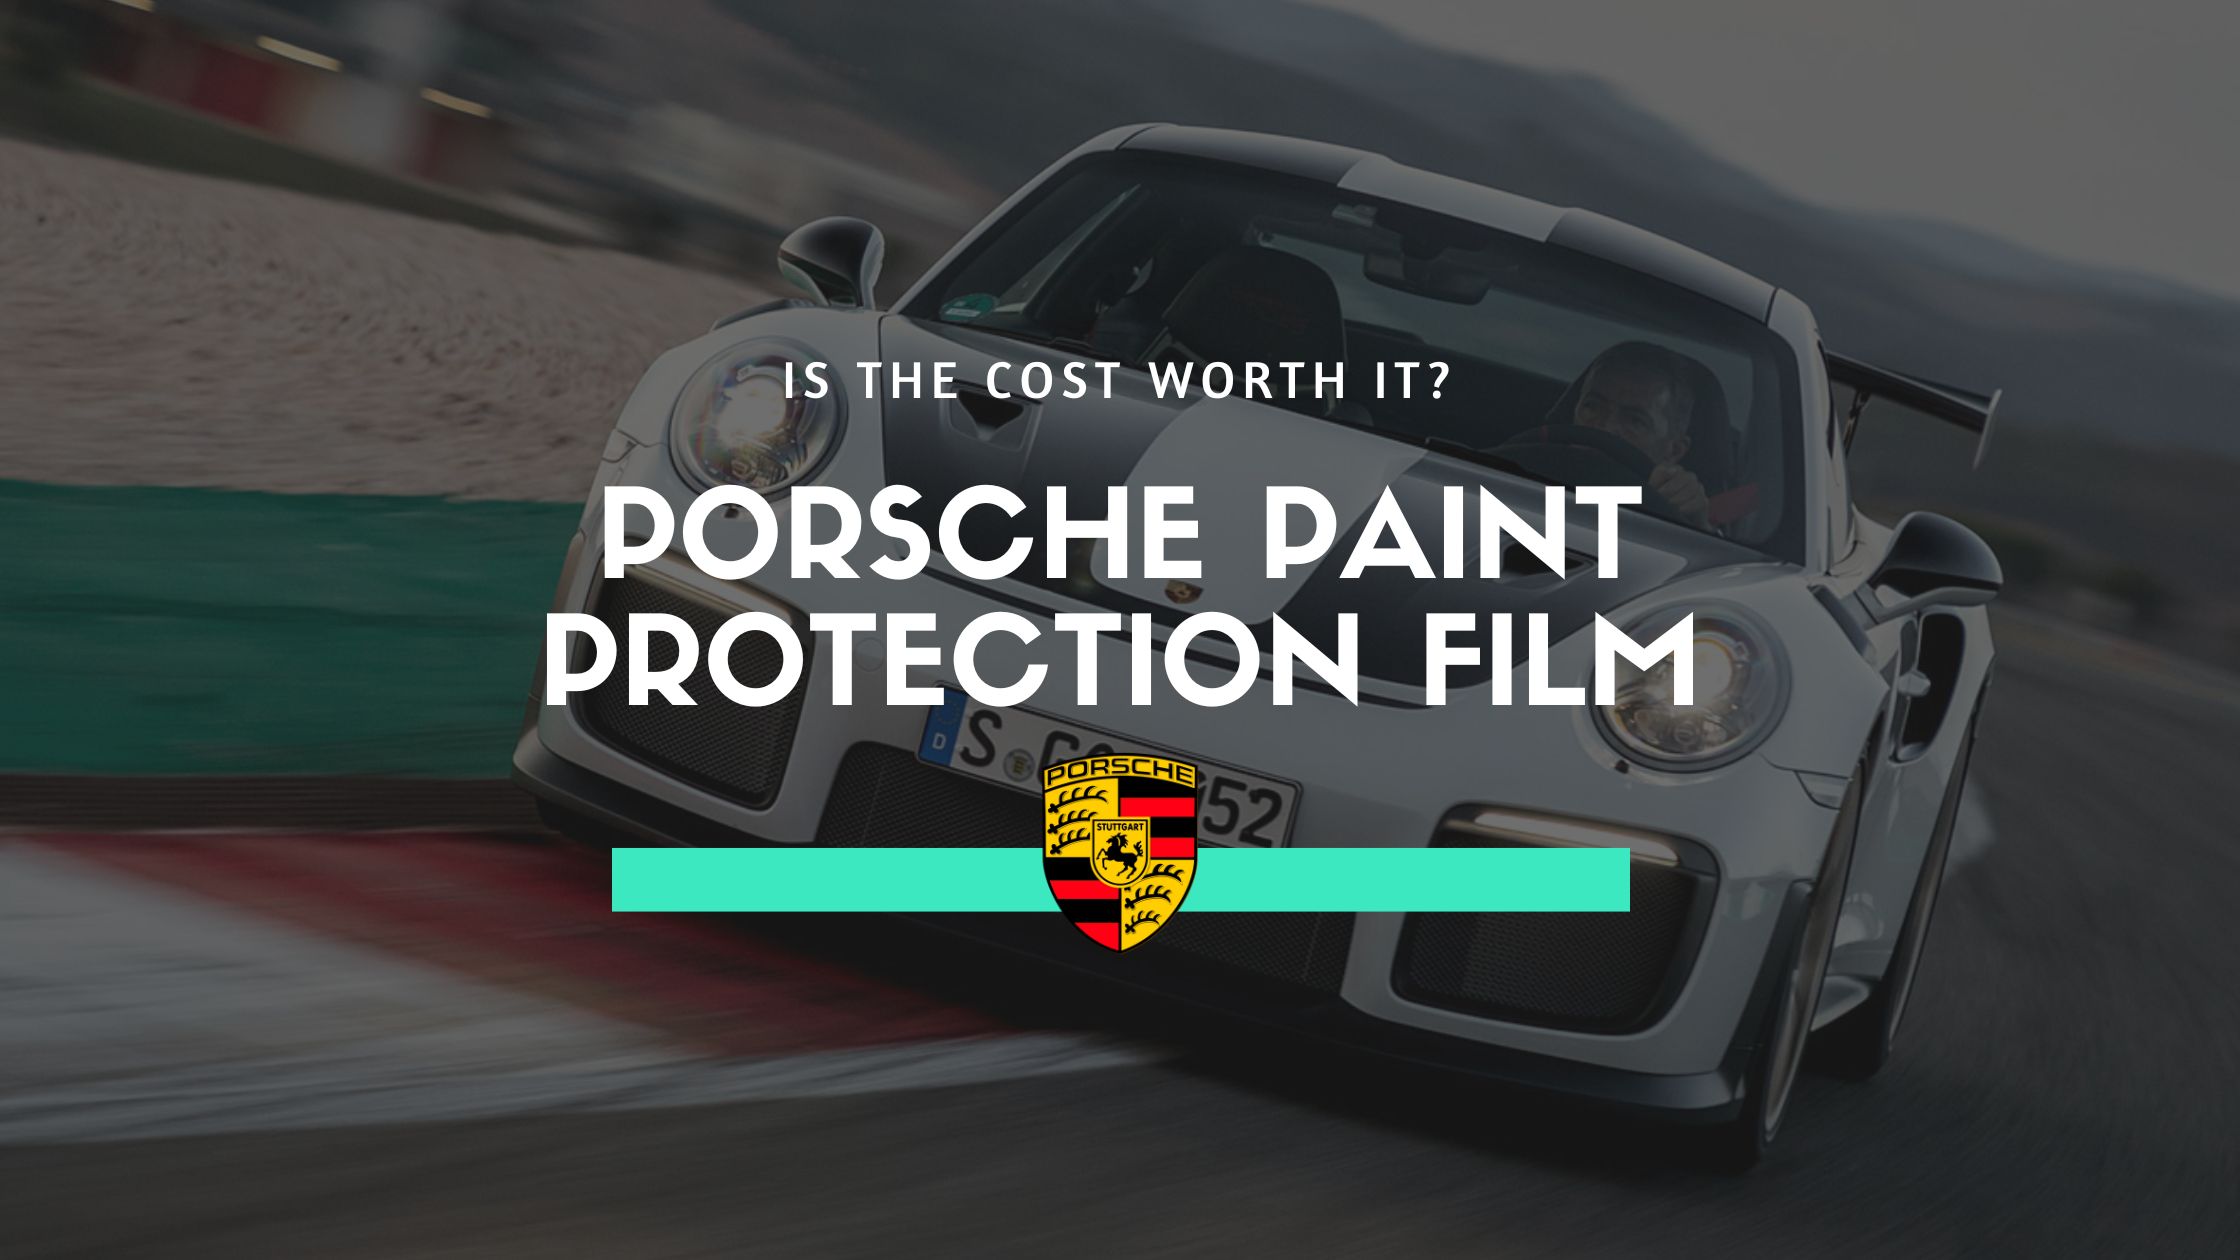 porsche paint protection film cost